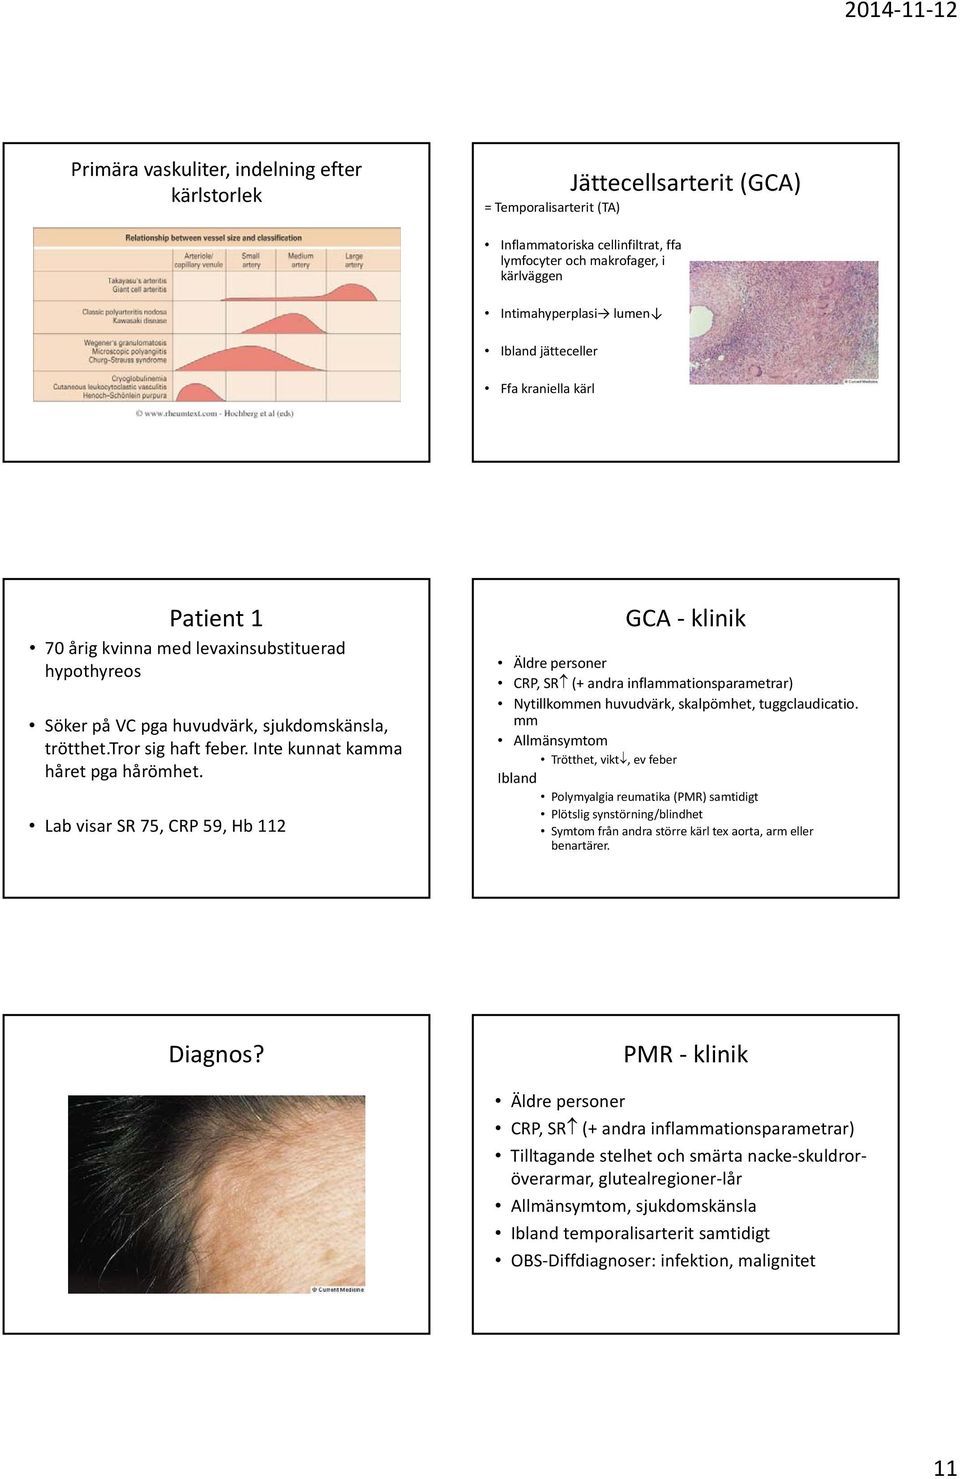 Inte kunnat kamma håret pga hårömhet. Lab visar SR 75, CRP 59, Hb 112 GCA klinik Äldre personer CRP, SR (+ andra inflammationsparametrar) Nytillkommen huvudvärk, skalpömhet, tuggclaudicatio.